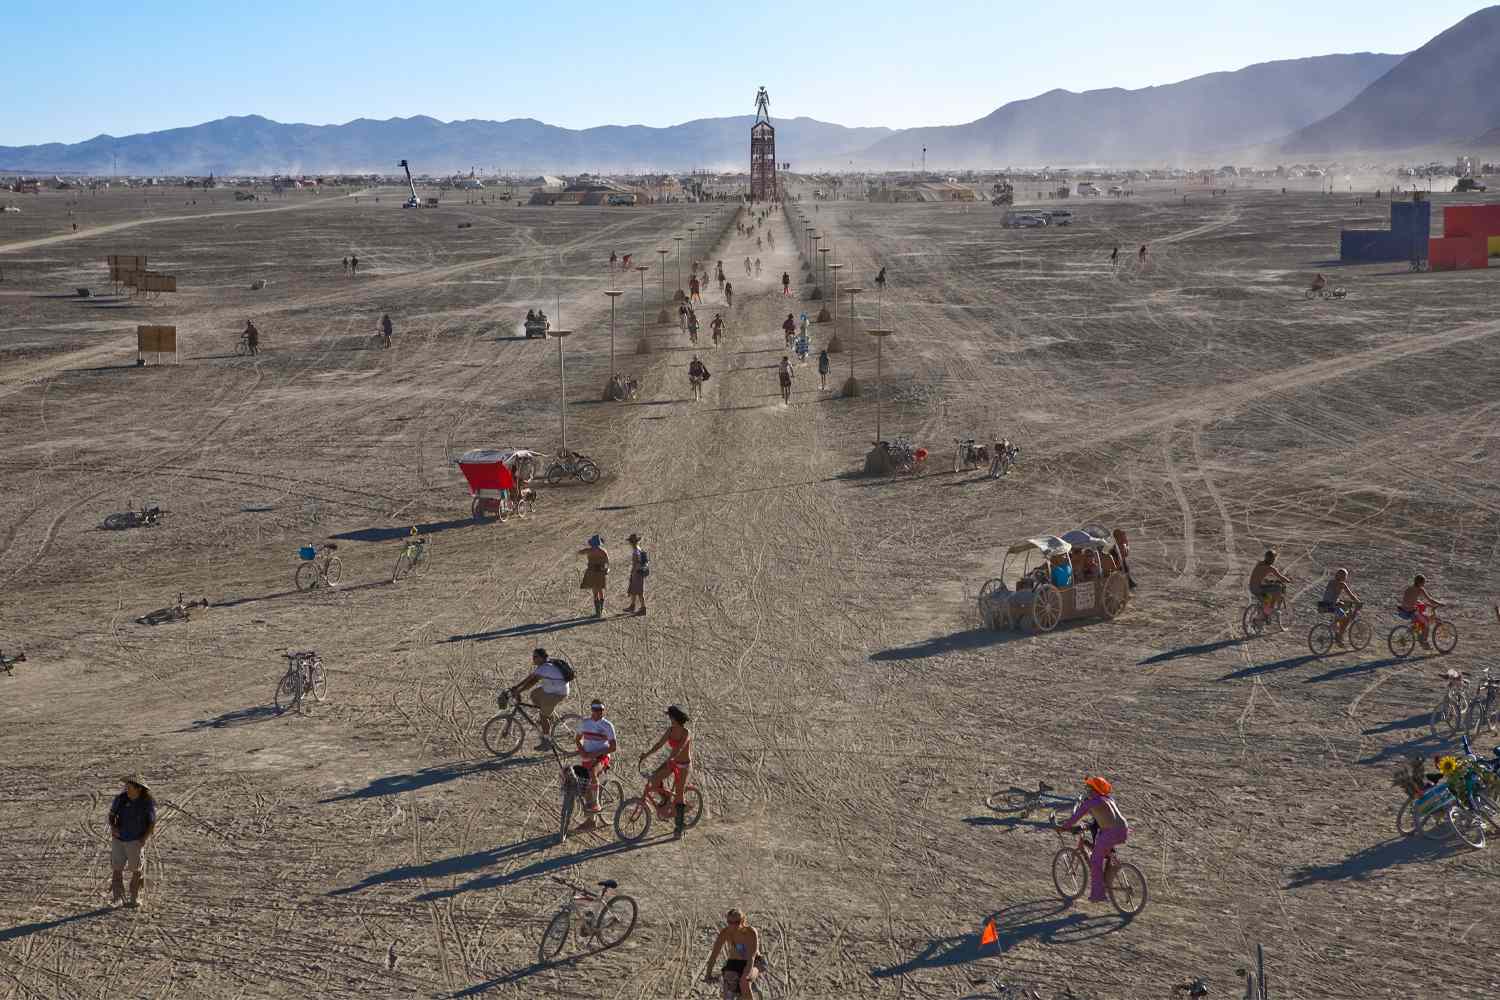 Тысячи посетителей фестиваля Burning Man застряли в пустыне Невады из-за проливных дождей